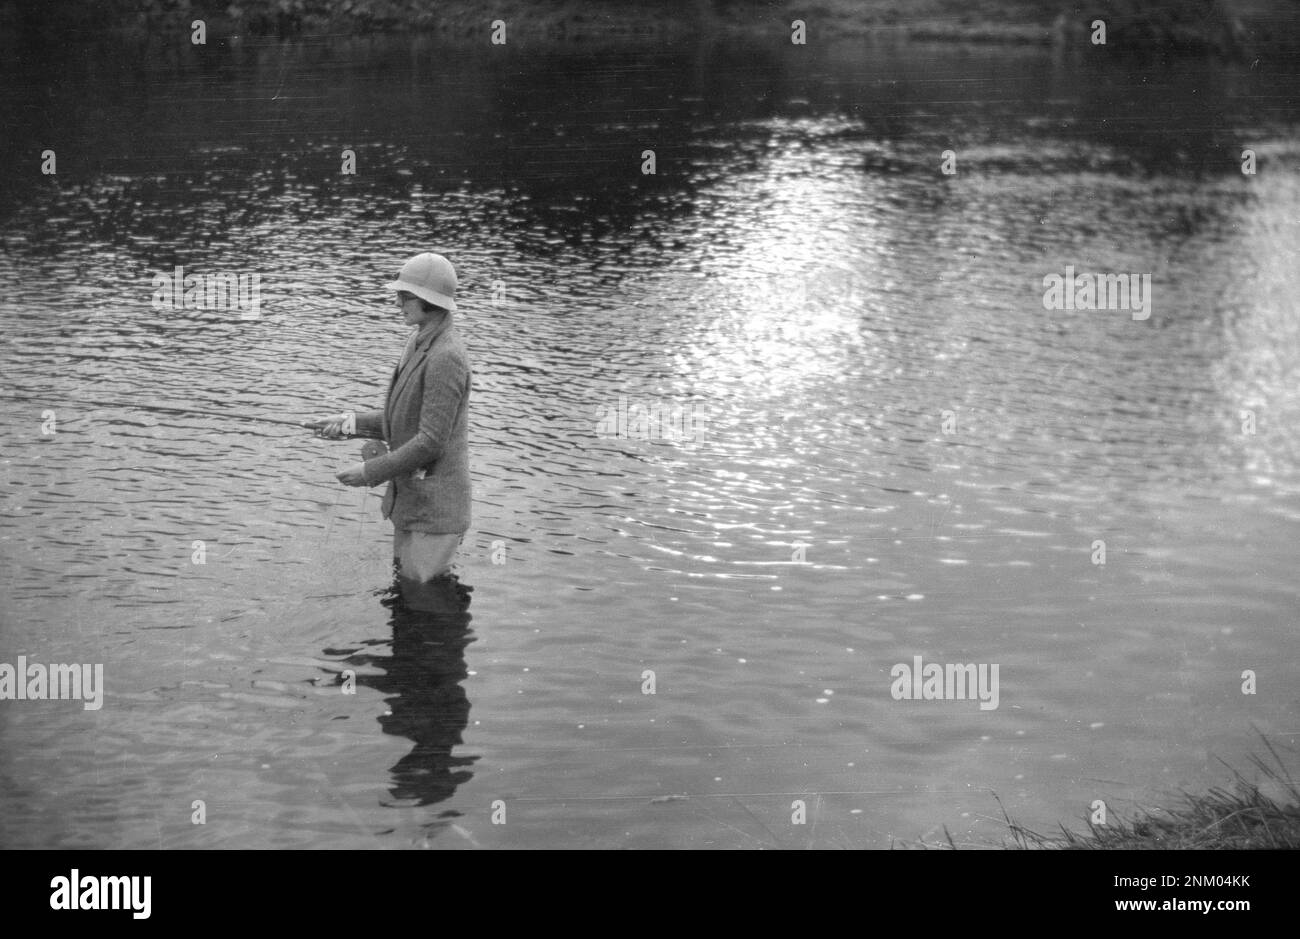 1934, historisch, eine Dame mit Jacke, Hut und Wader, die in einem Fluss steht, Fliegenfischen, England, Großbritannien. Stockfoto